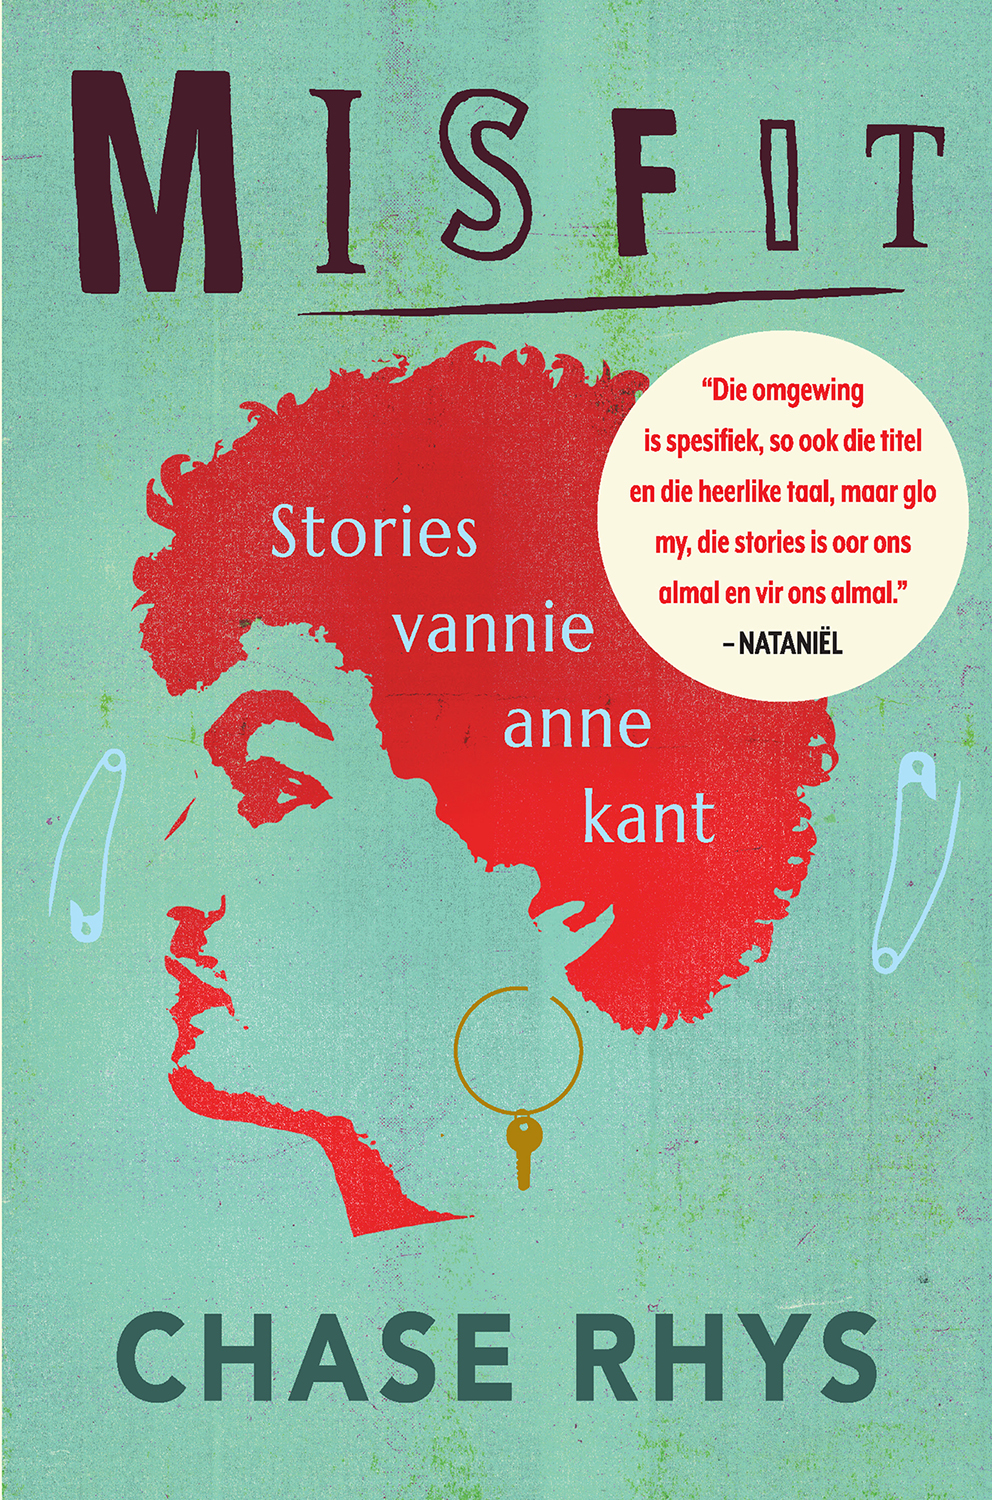 Misfit : Stories Vannie Anne Kant